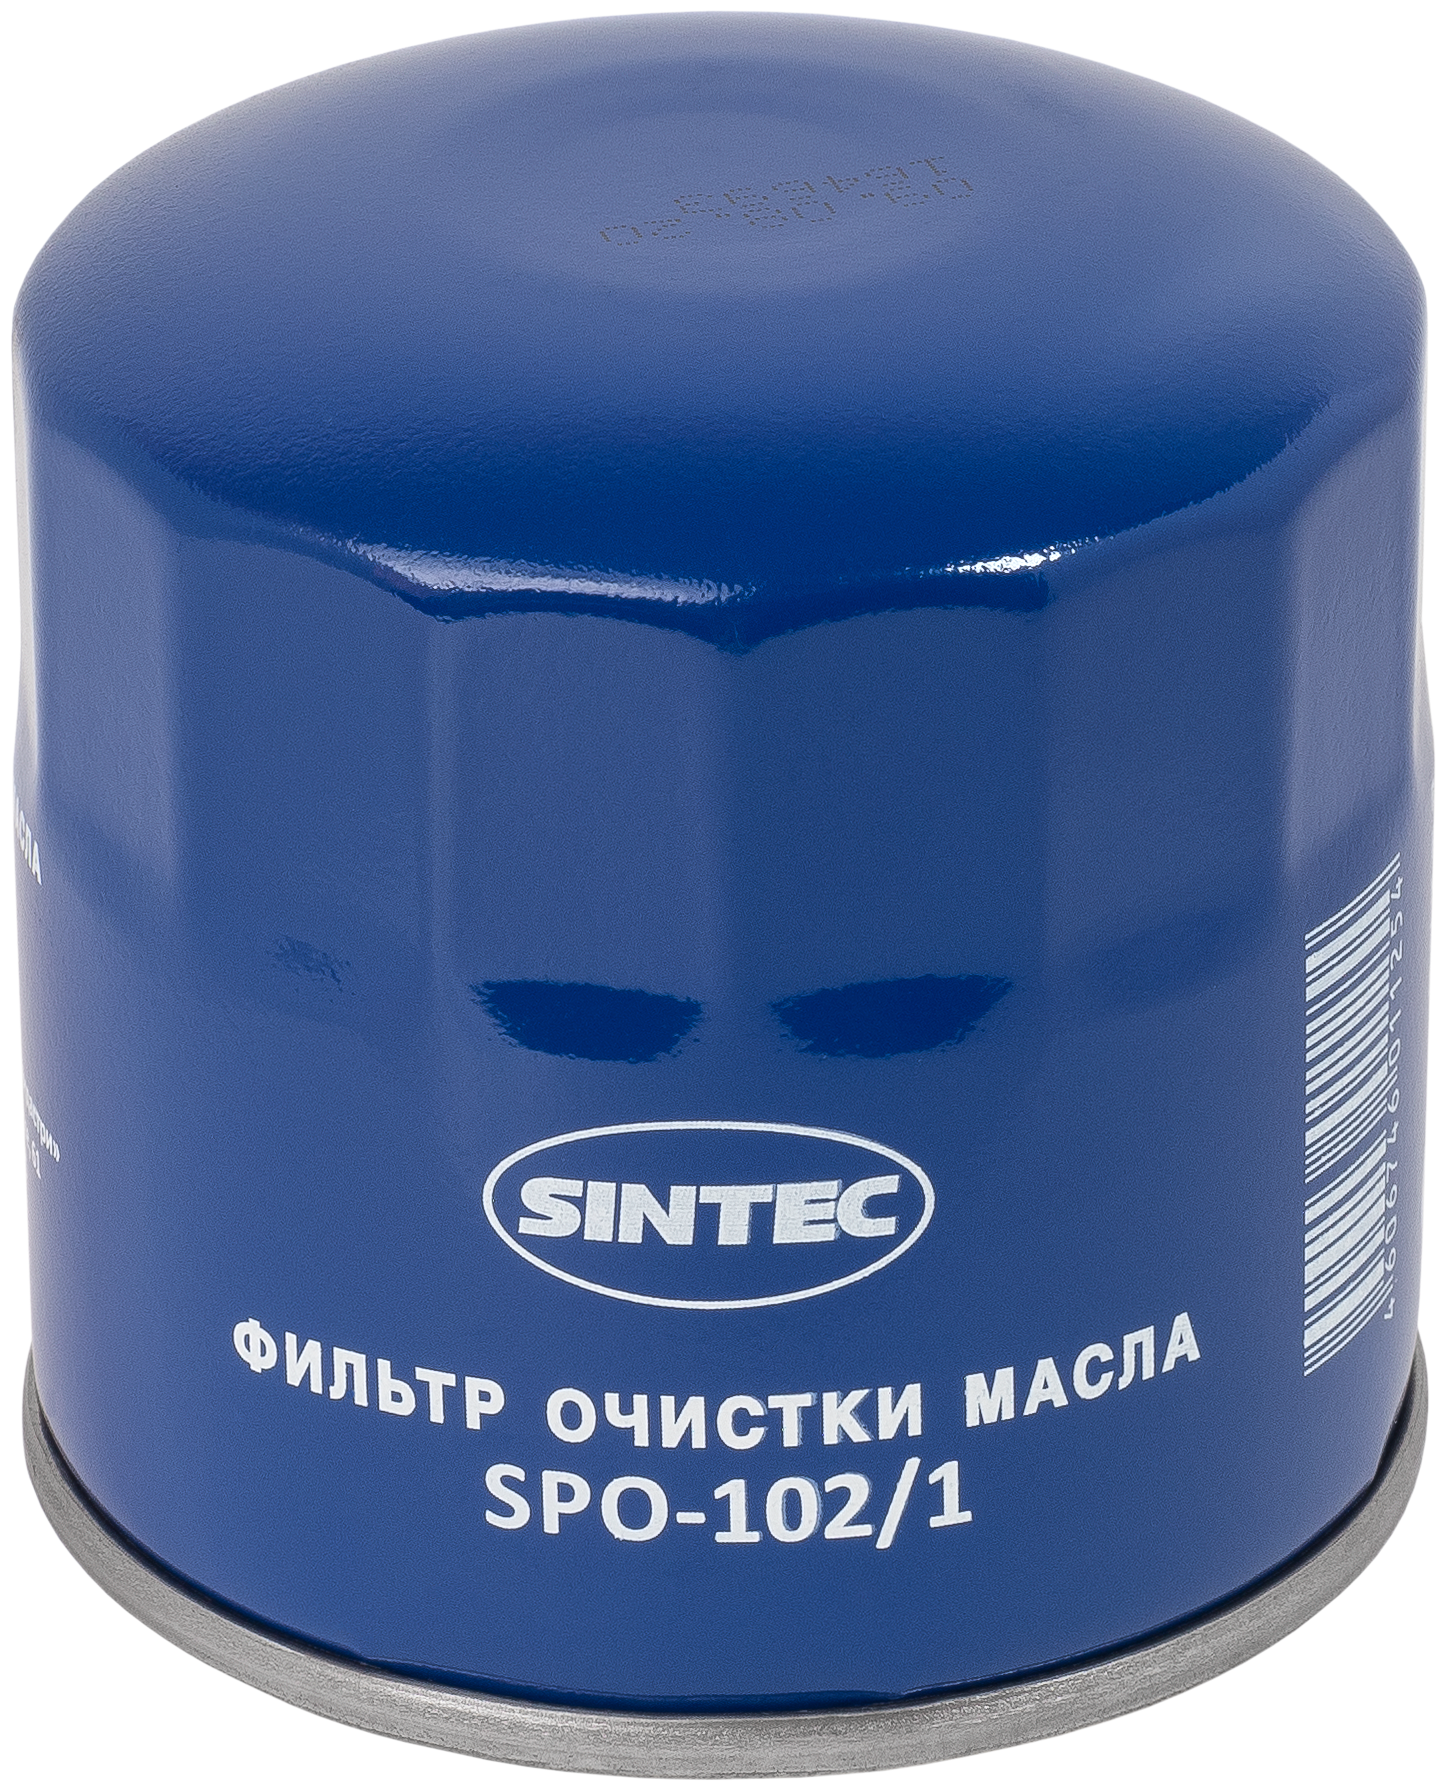 Масляный фильтр (SNF-2101-M) LADA 2101-2107/NIVA Sintec SPO-102/1